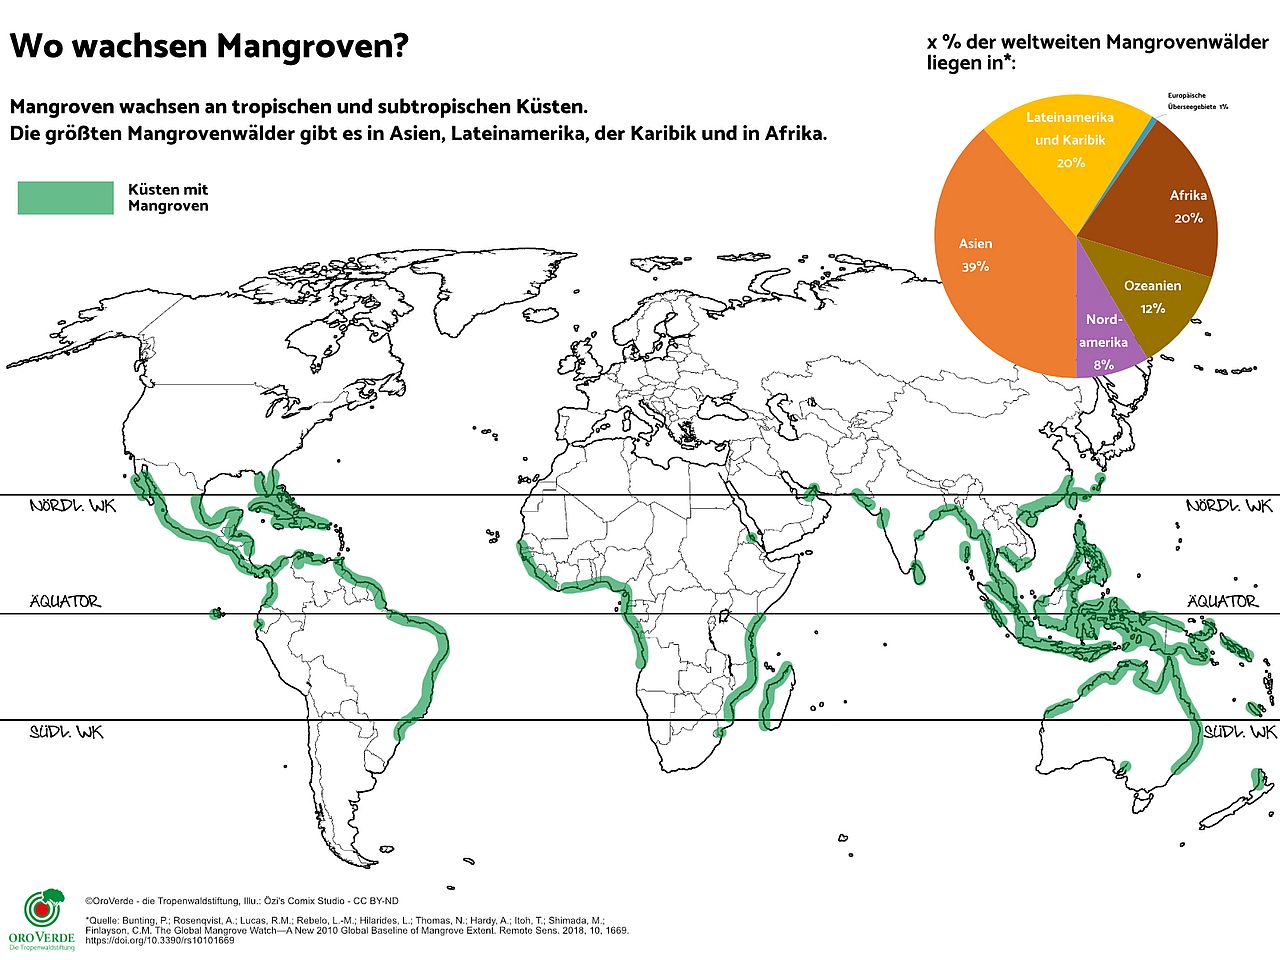 Die Mangroven Karte zeigt, dass Mangroven rund um den Äquator an den tropischen und subtropischen Küsten wachsen. Der größte Mangrovenbestand liegt in Asien, Afrika und Lateinamerika & Karibik. ©OroVerde nach Giri et al. (2011) / Illustration: Özi´s Comix Studio